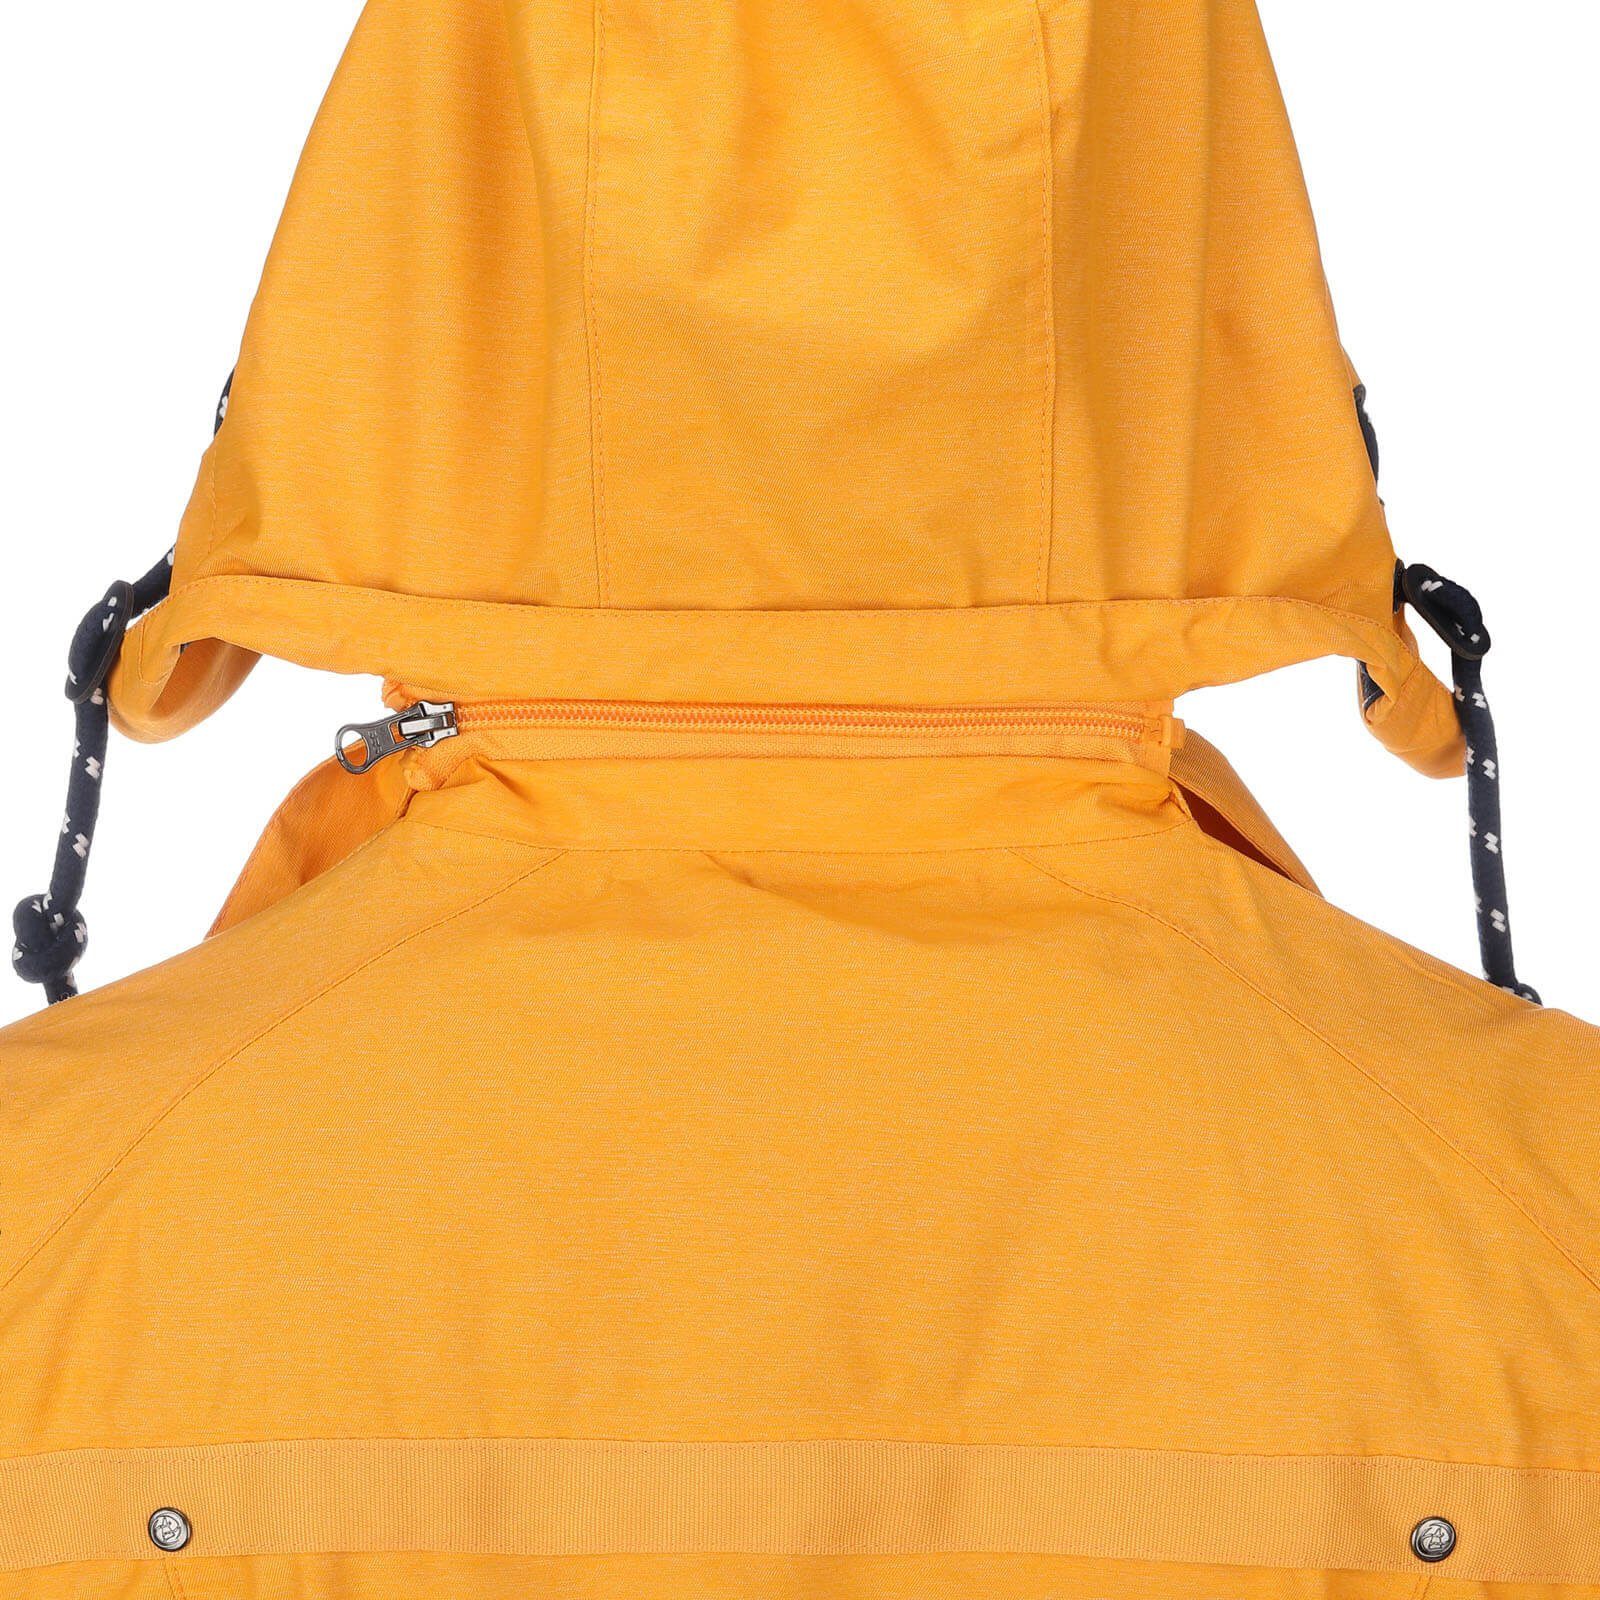 Damen Funktionsmantel gelb Fashion Funktionsjacke Regen-Mantel melange wasserdicht - Regenjacke Dry Bansin